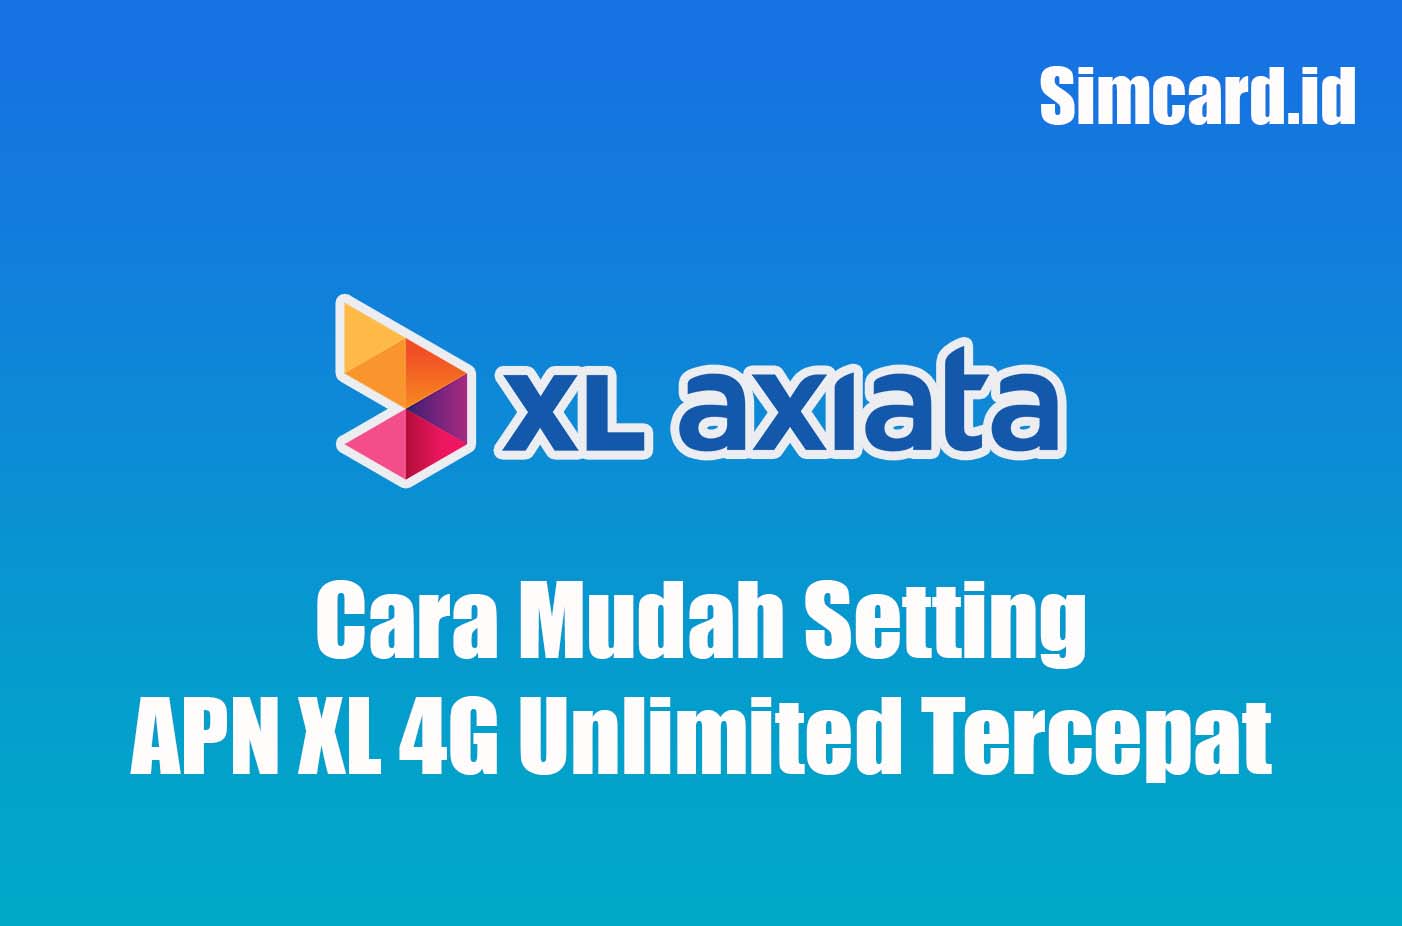 Cara Mudah Setting APN XL 4G Unlimited Tercepat